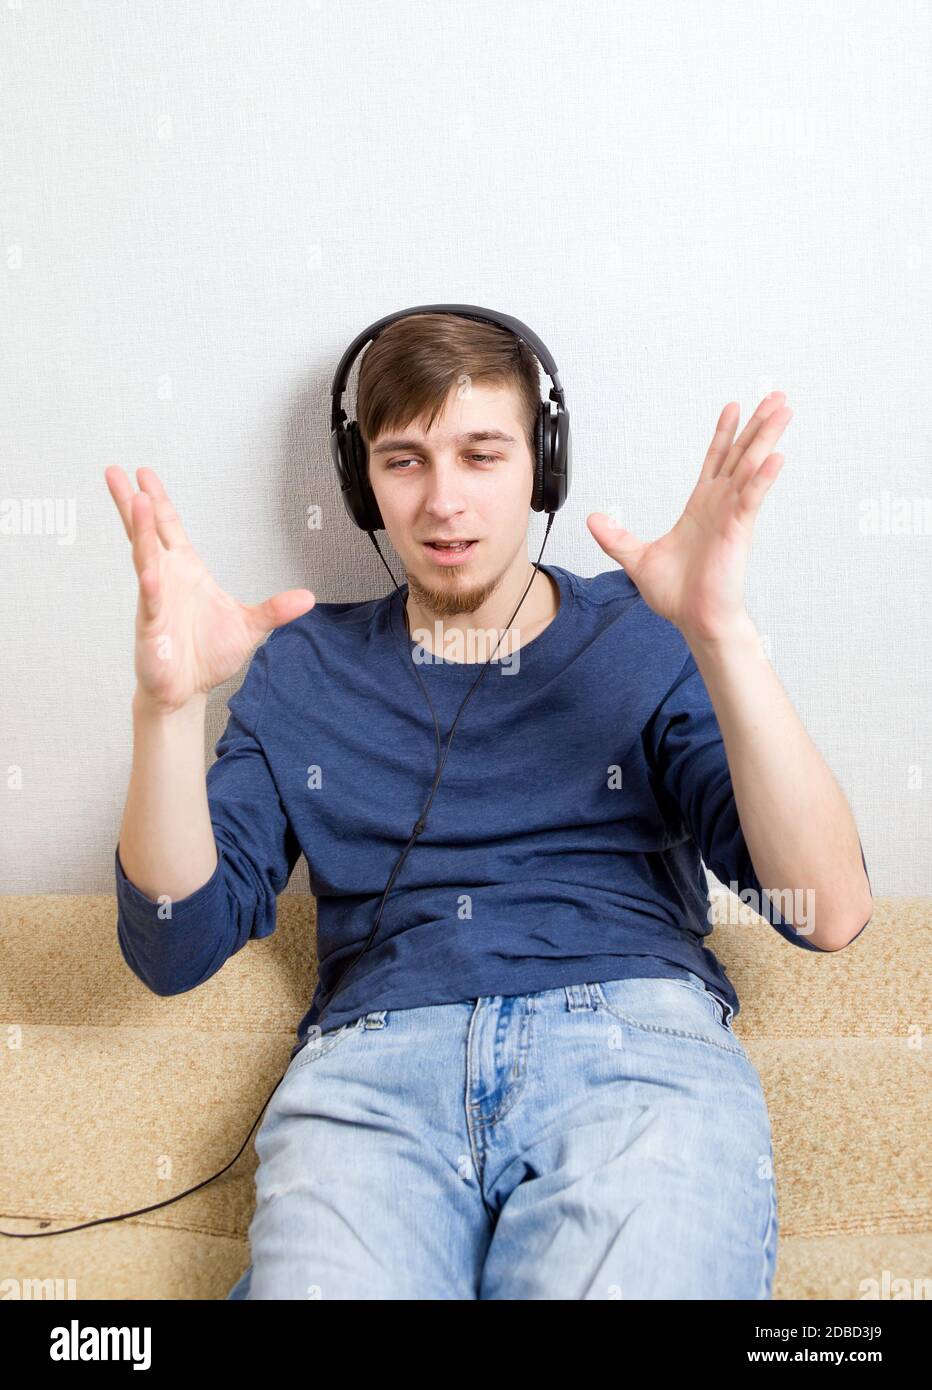 Glücklicher junger Mann in den Kopfhörern Hören Sie die Musik An der Wand Stockfoto